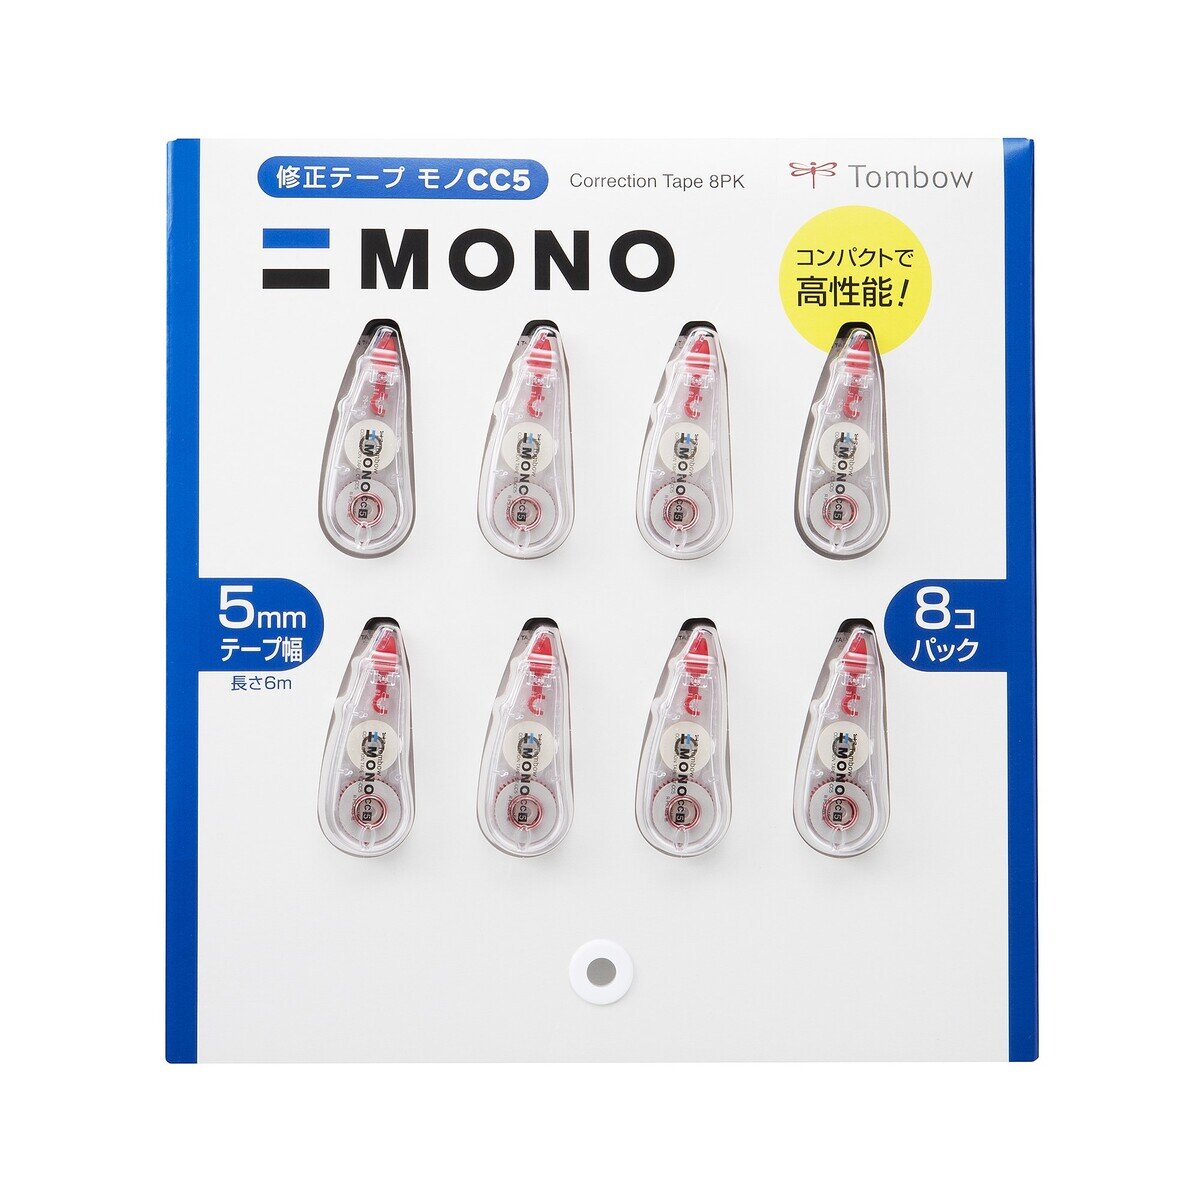 トンボ鉛筆 修正テープ MONO CC5 5mm x 6m 8個セット